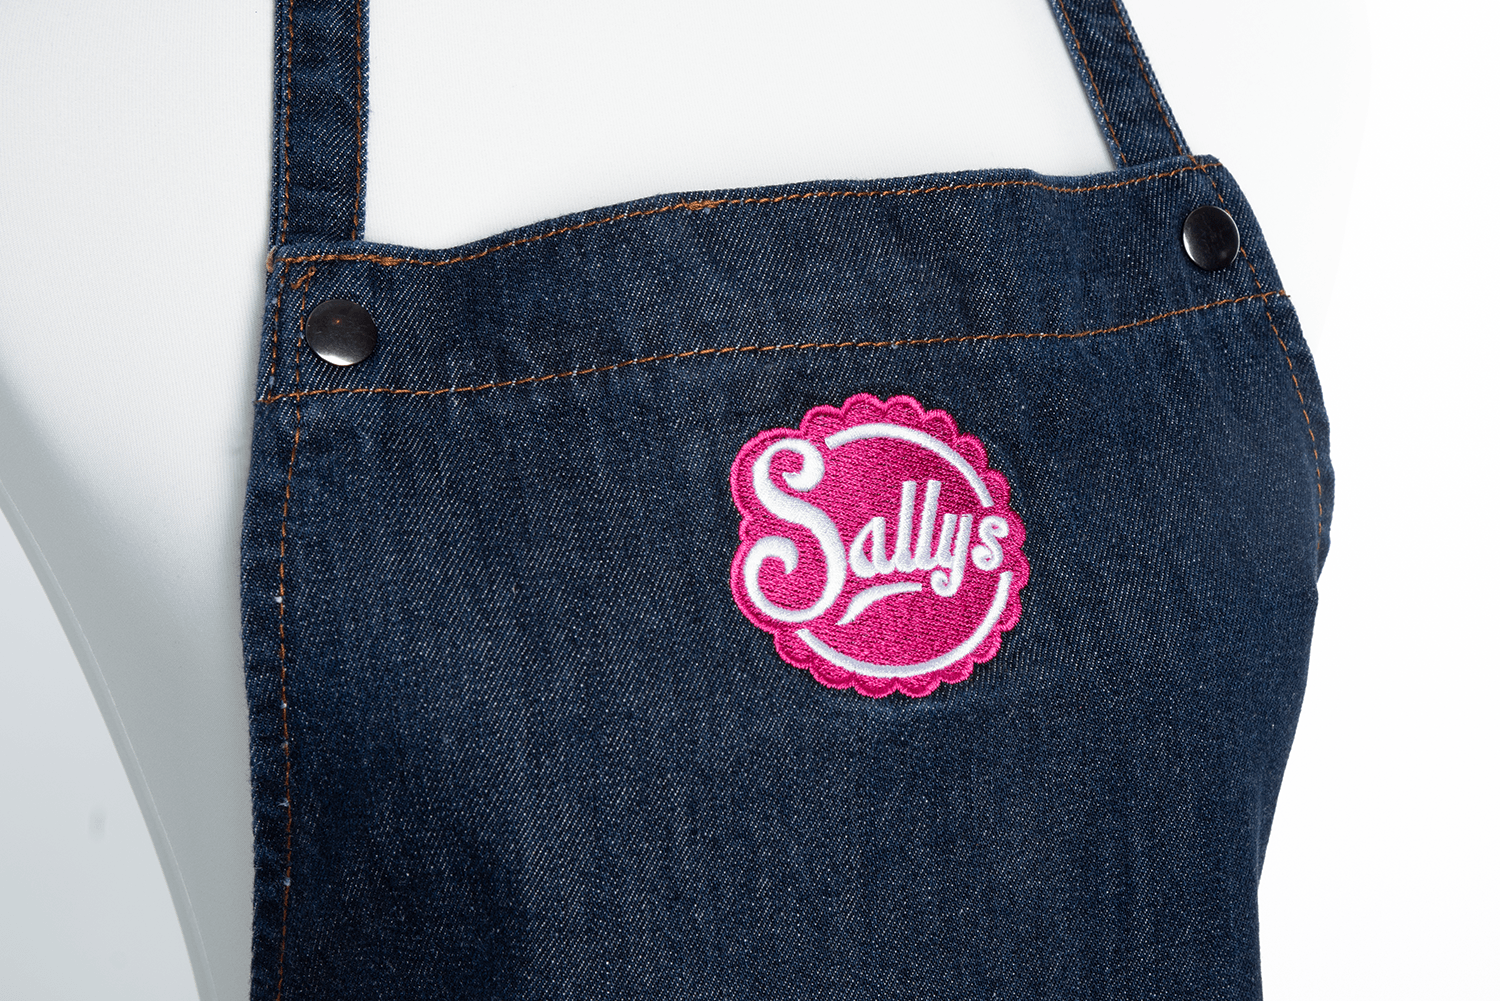 Nahaufnahme des Sallys Logos auf der Schürze in Jeansoptik